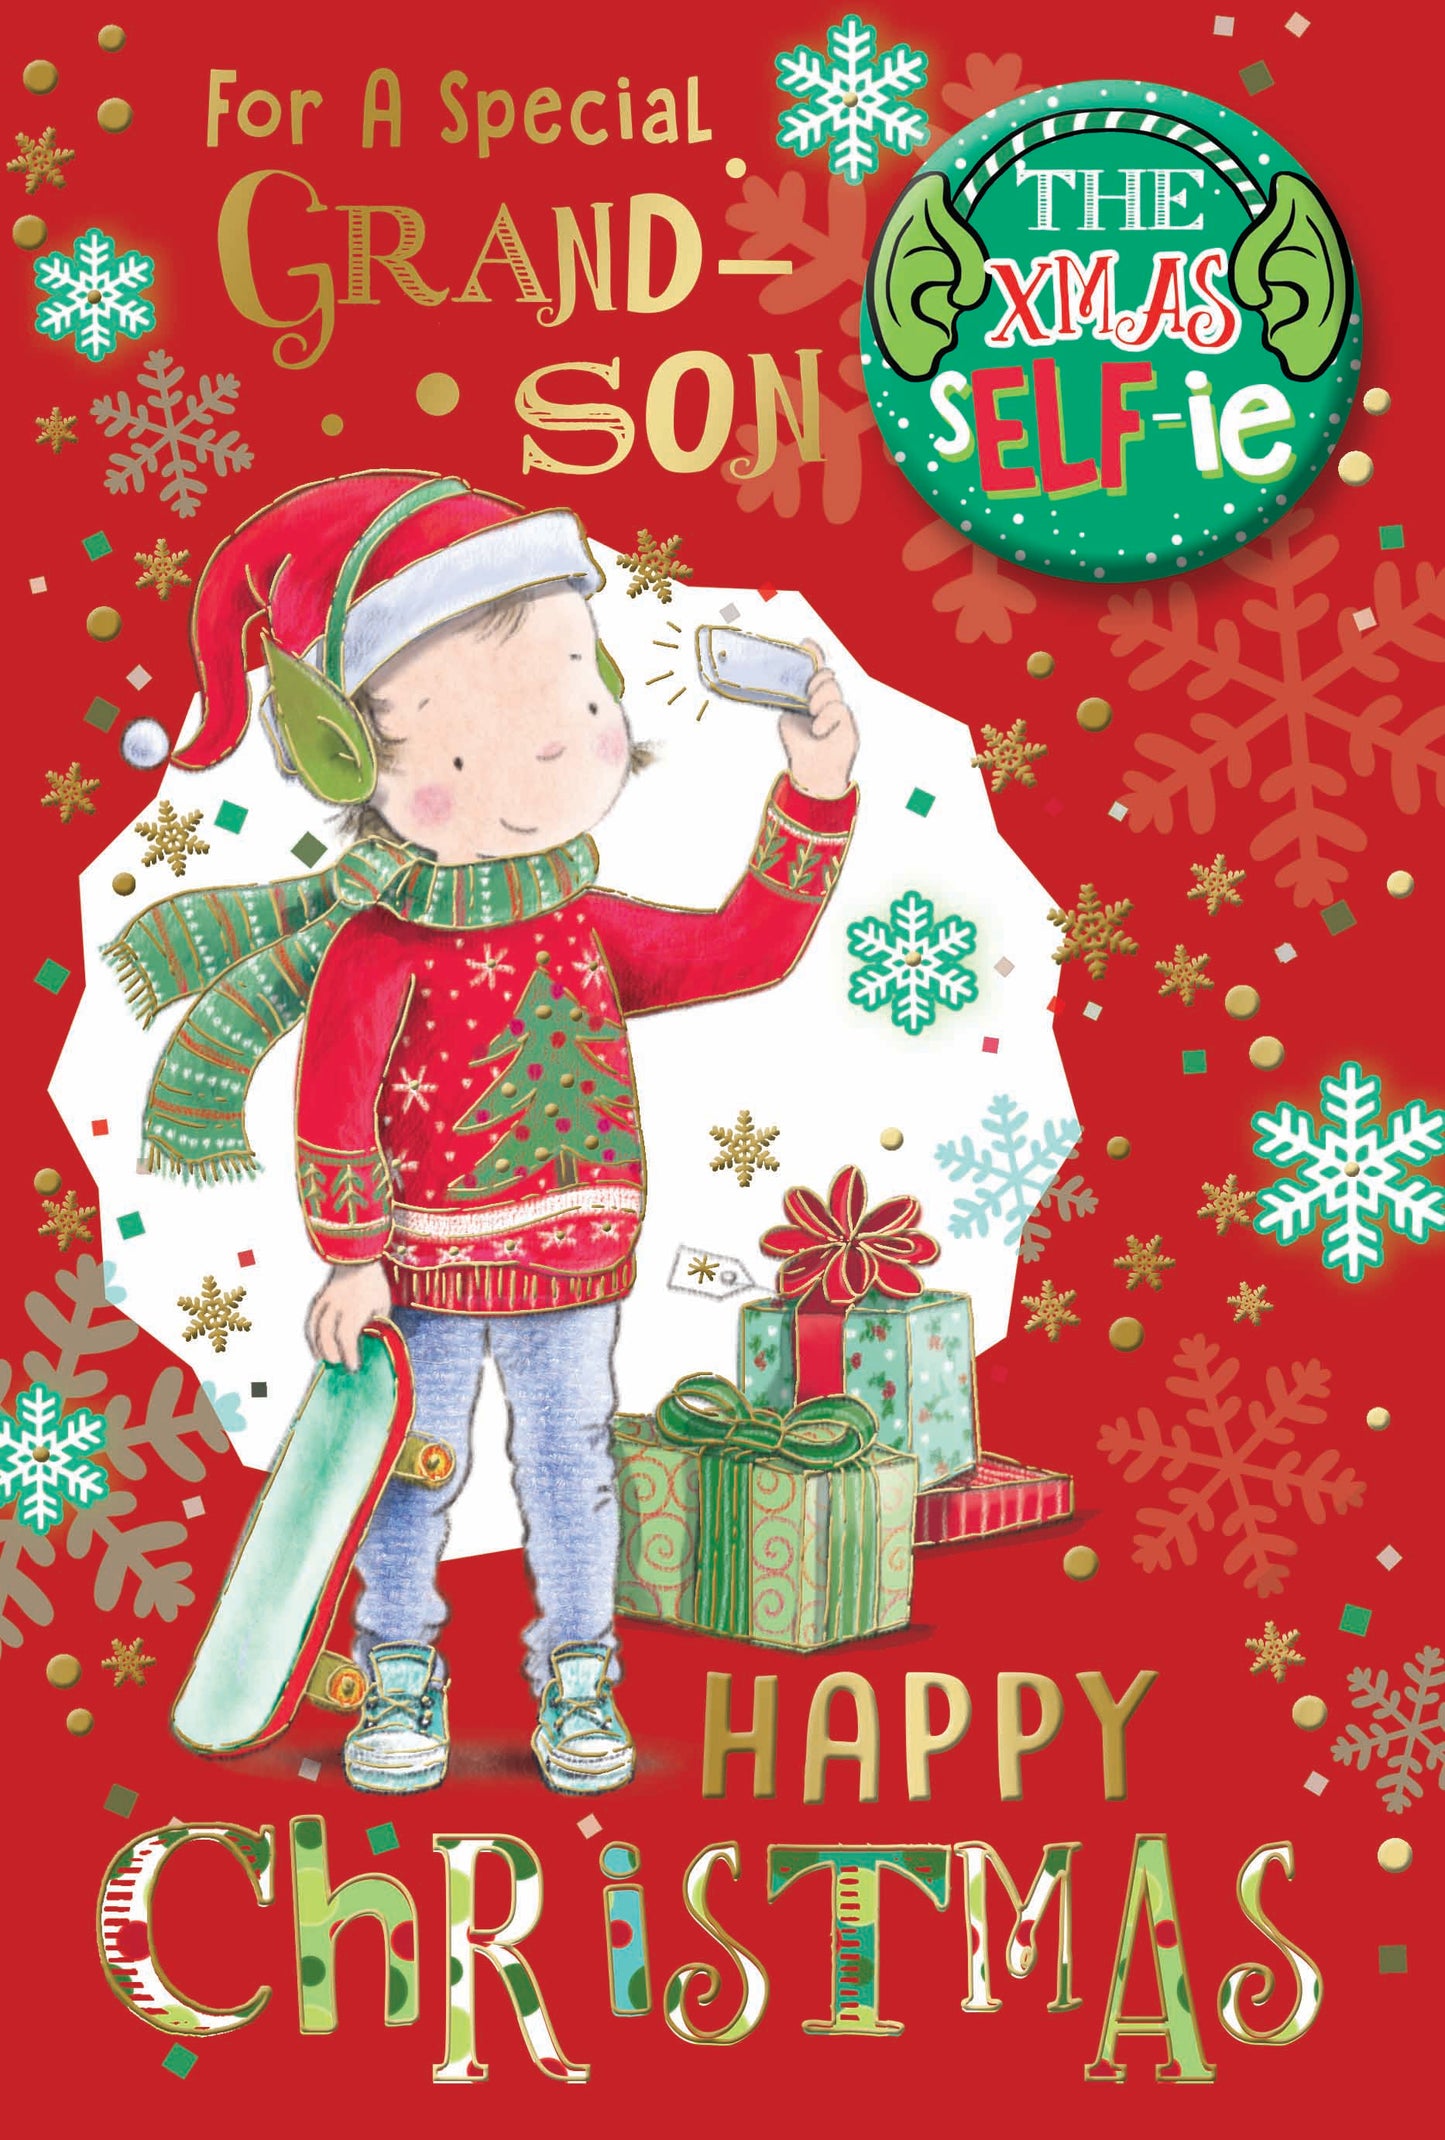 For a Special Grandson Selfie Design Christmas Card